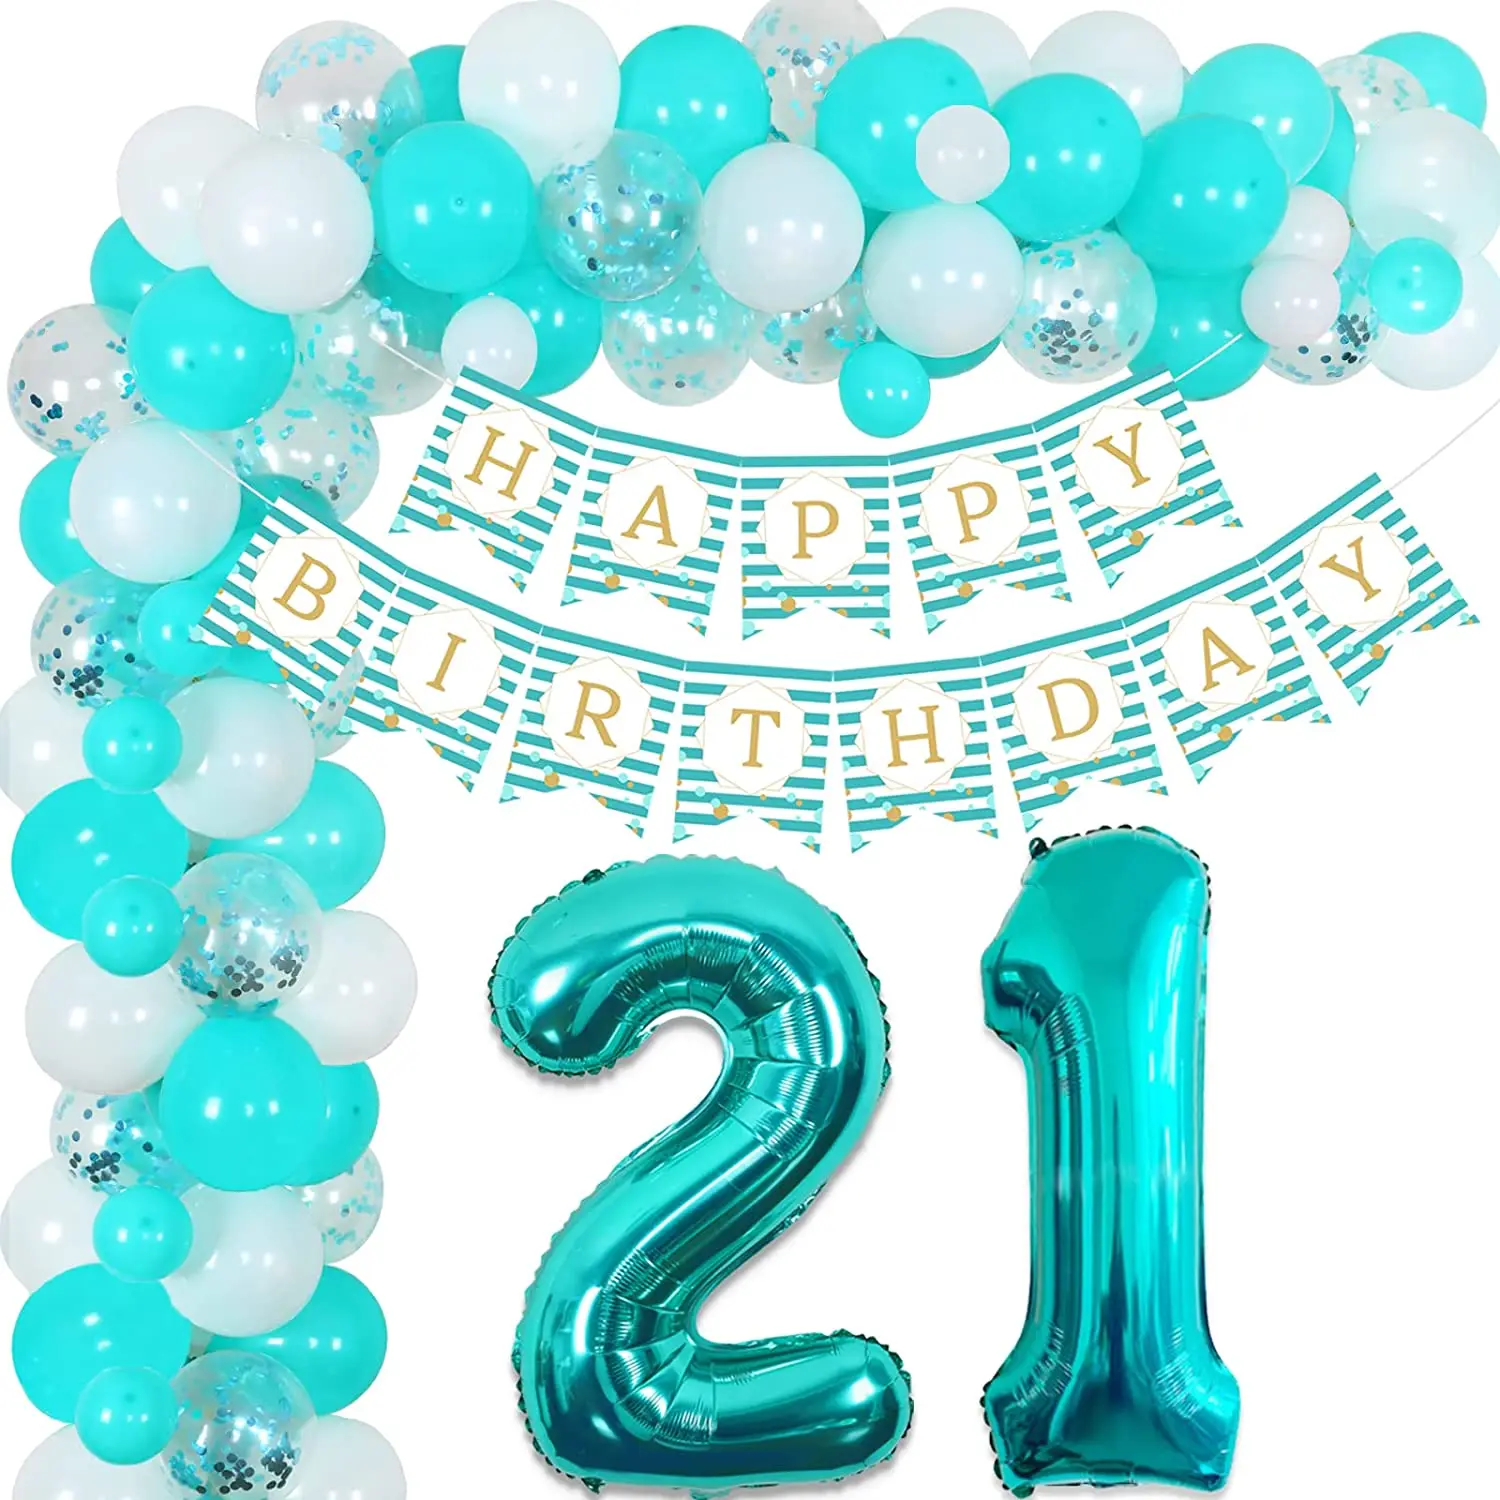 

Cheereveal, украшения для дня рождения, гирлянда с голубыми воздушными шарами, цвет бирюза, баннер на день рождения для девушек и женщин